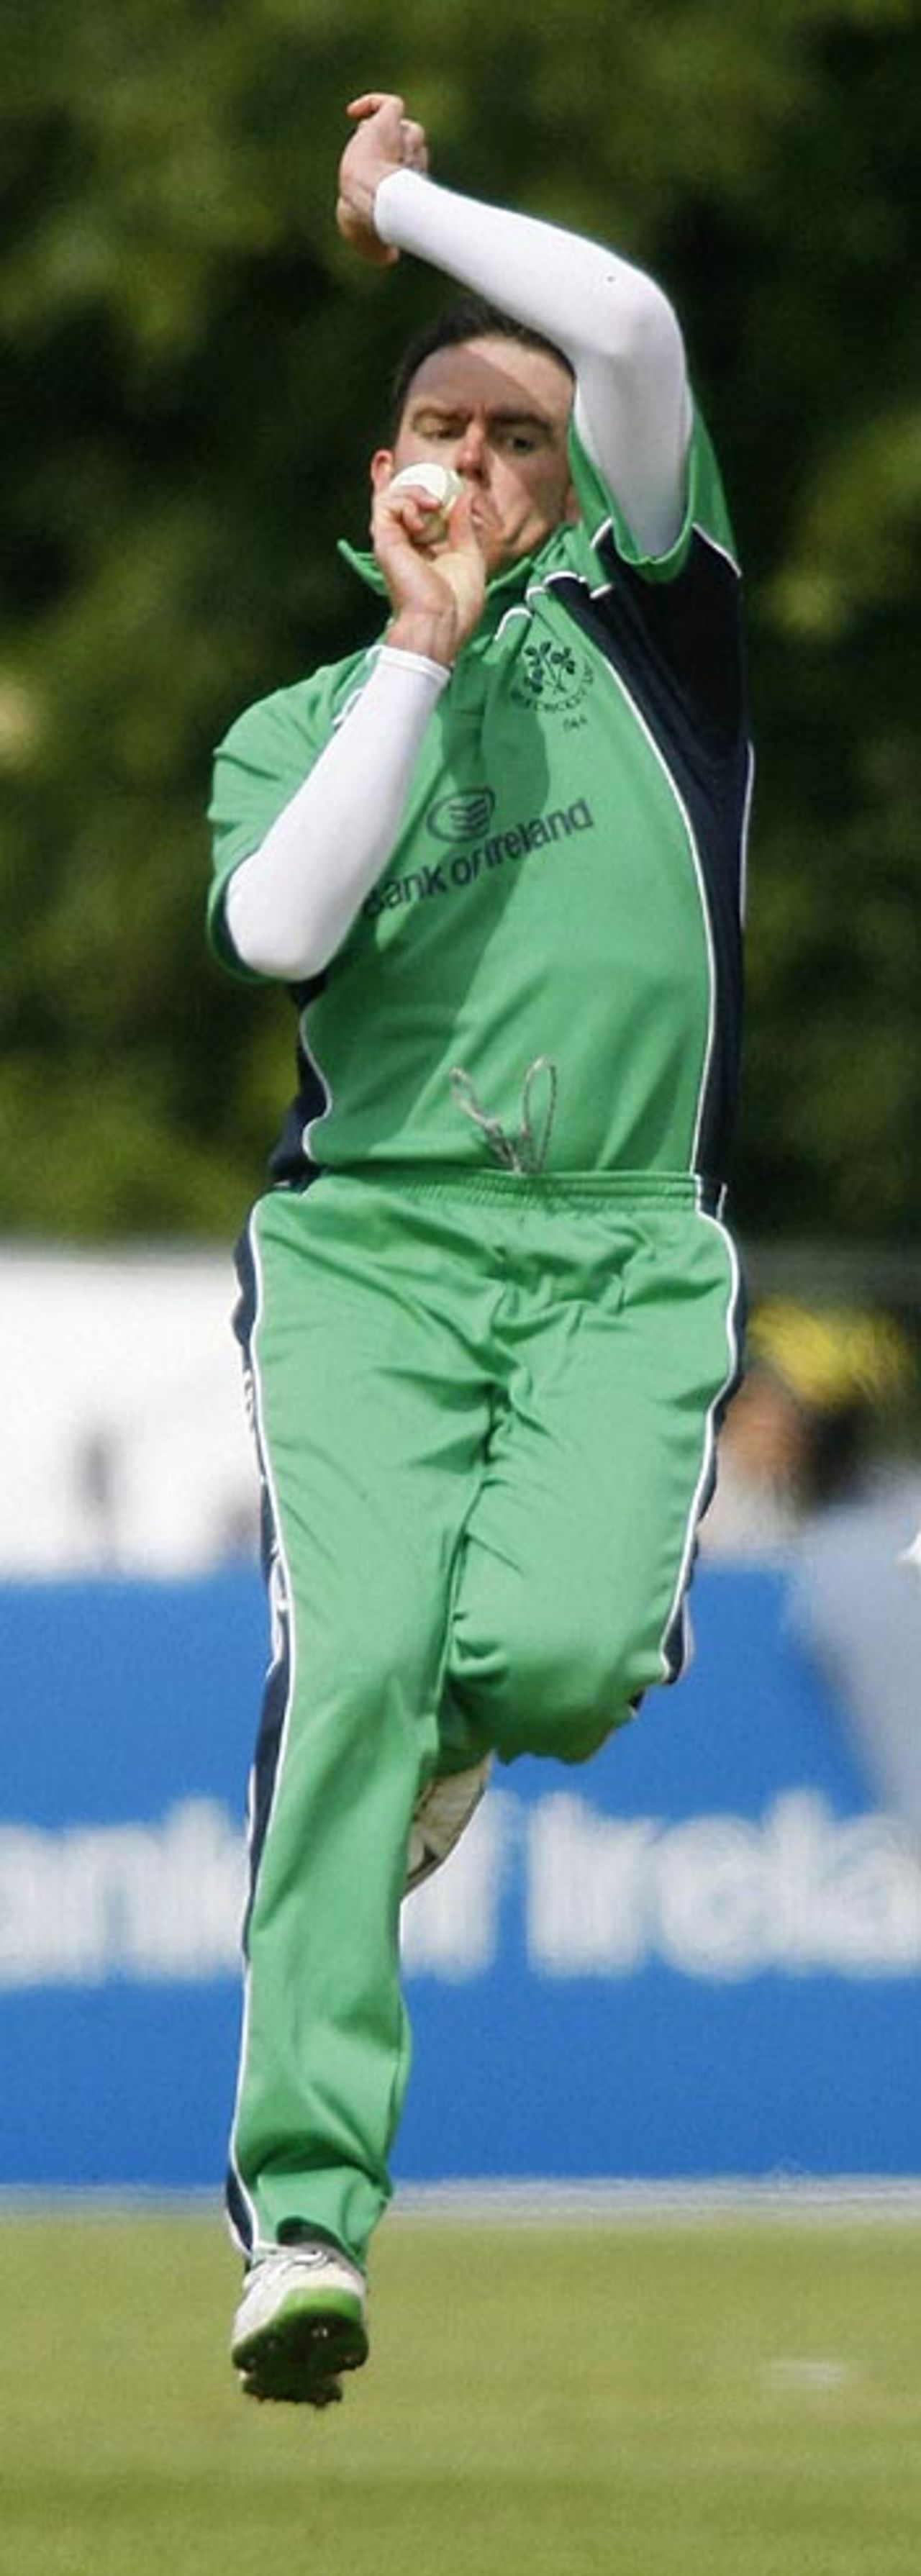 Trent Johnston roars in to bowl, Ireland v England, Stormont, June 13, 2006